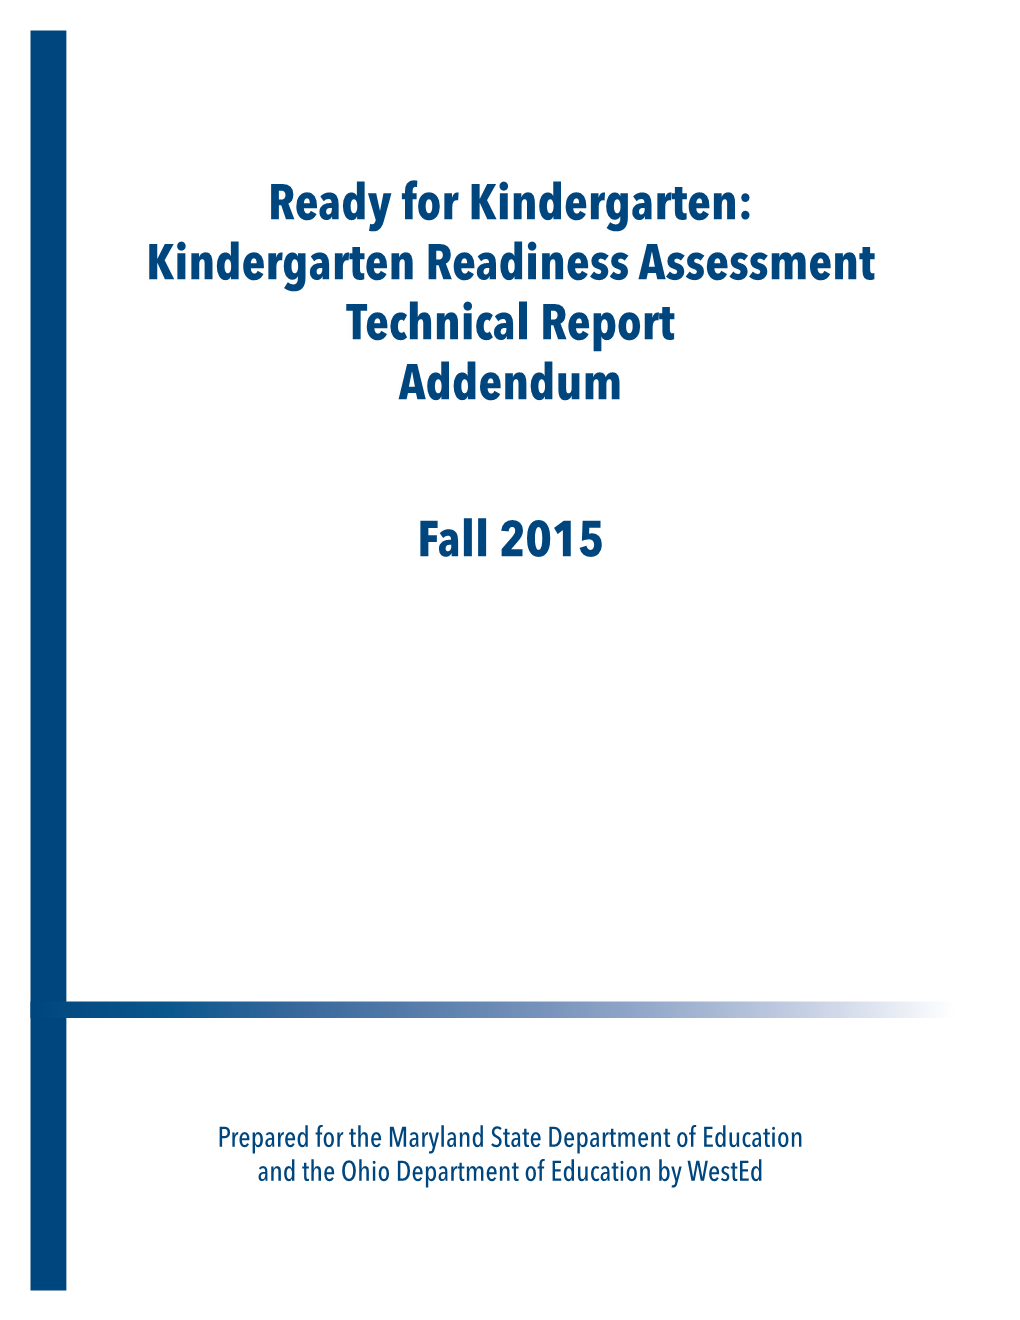 Kindergarten Readiness Assessment Technical Report Addendum Fall